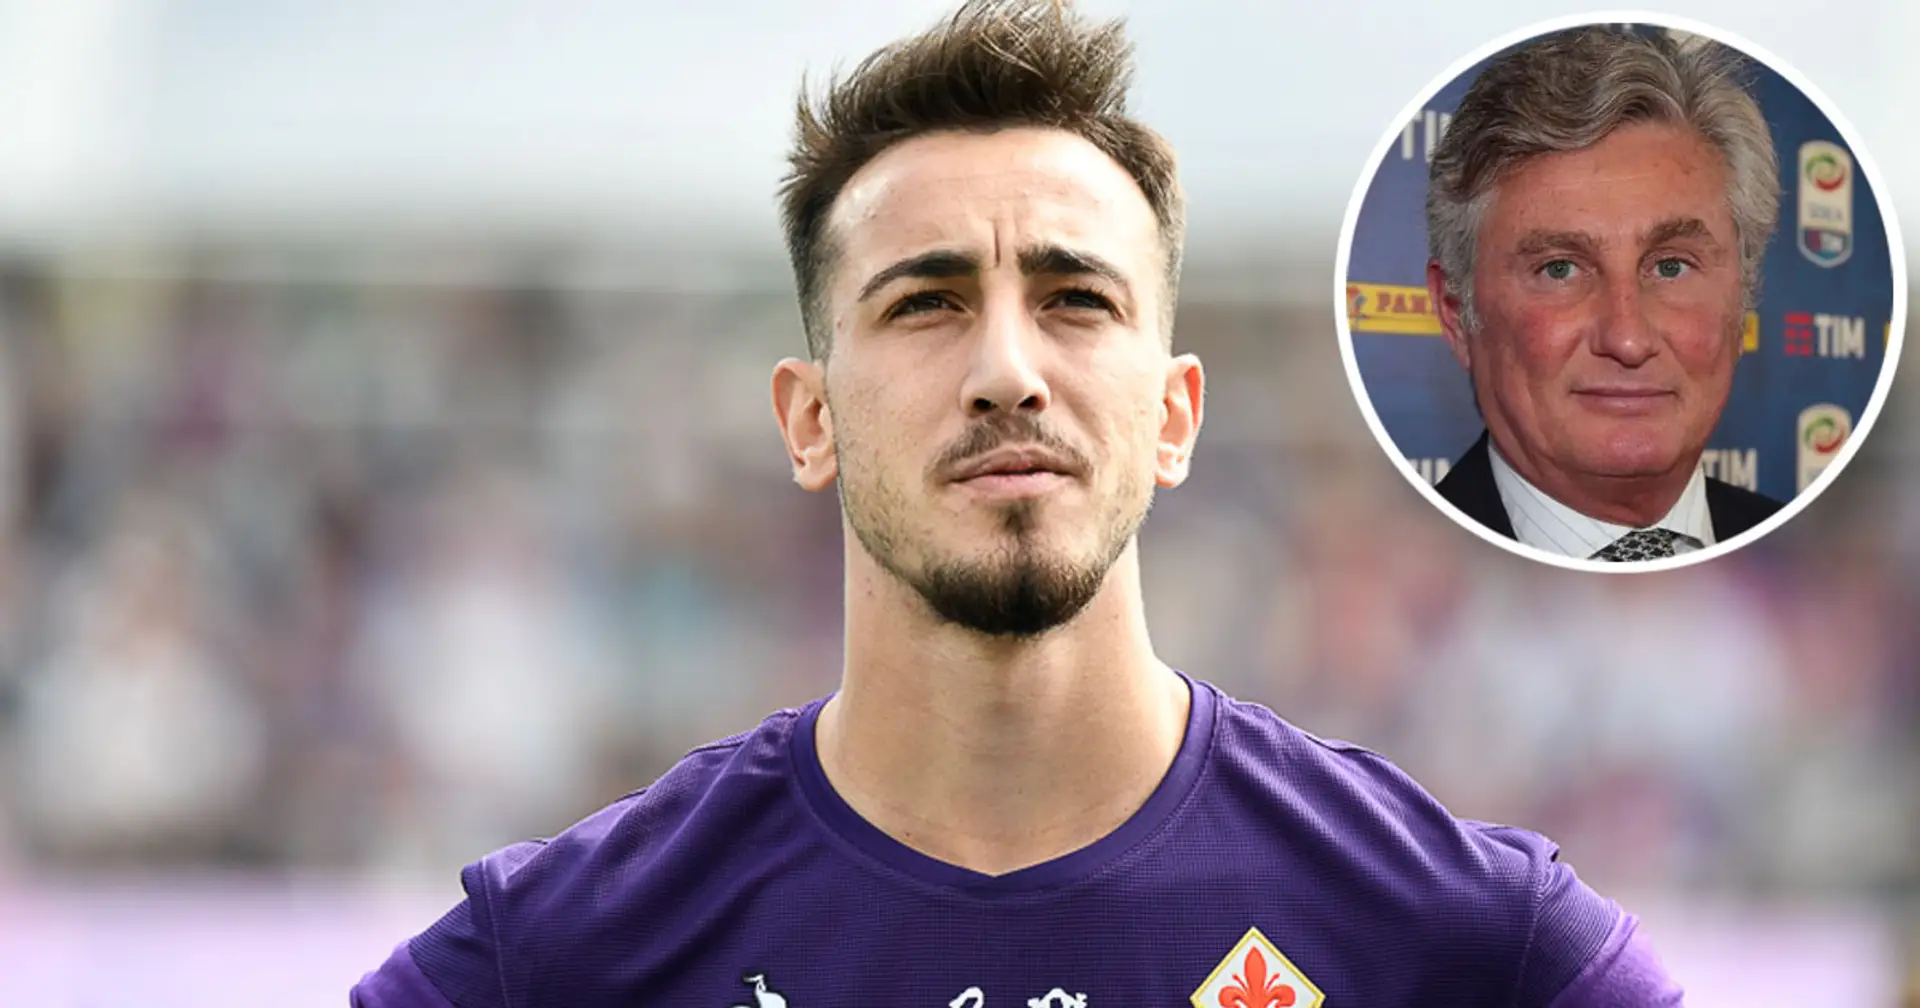 Le frasi del DS dei Viola su Castrovilli spaventano i rossoneri: "È un punto fermo della Fiorentina che verrà"